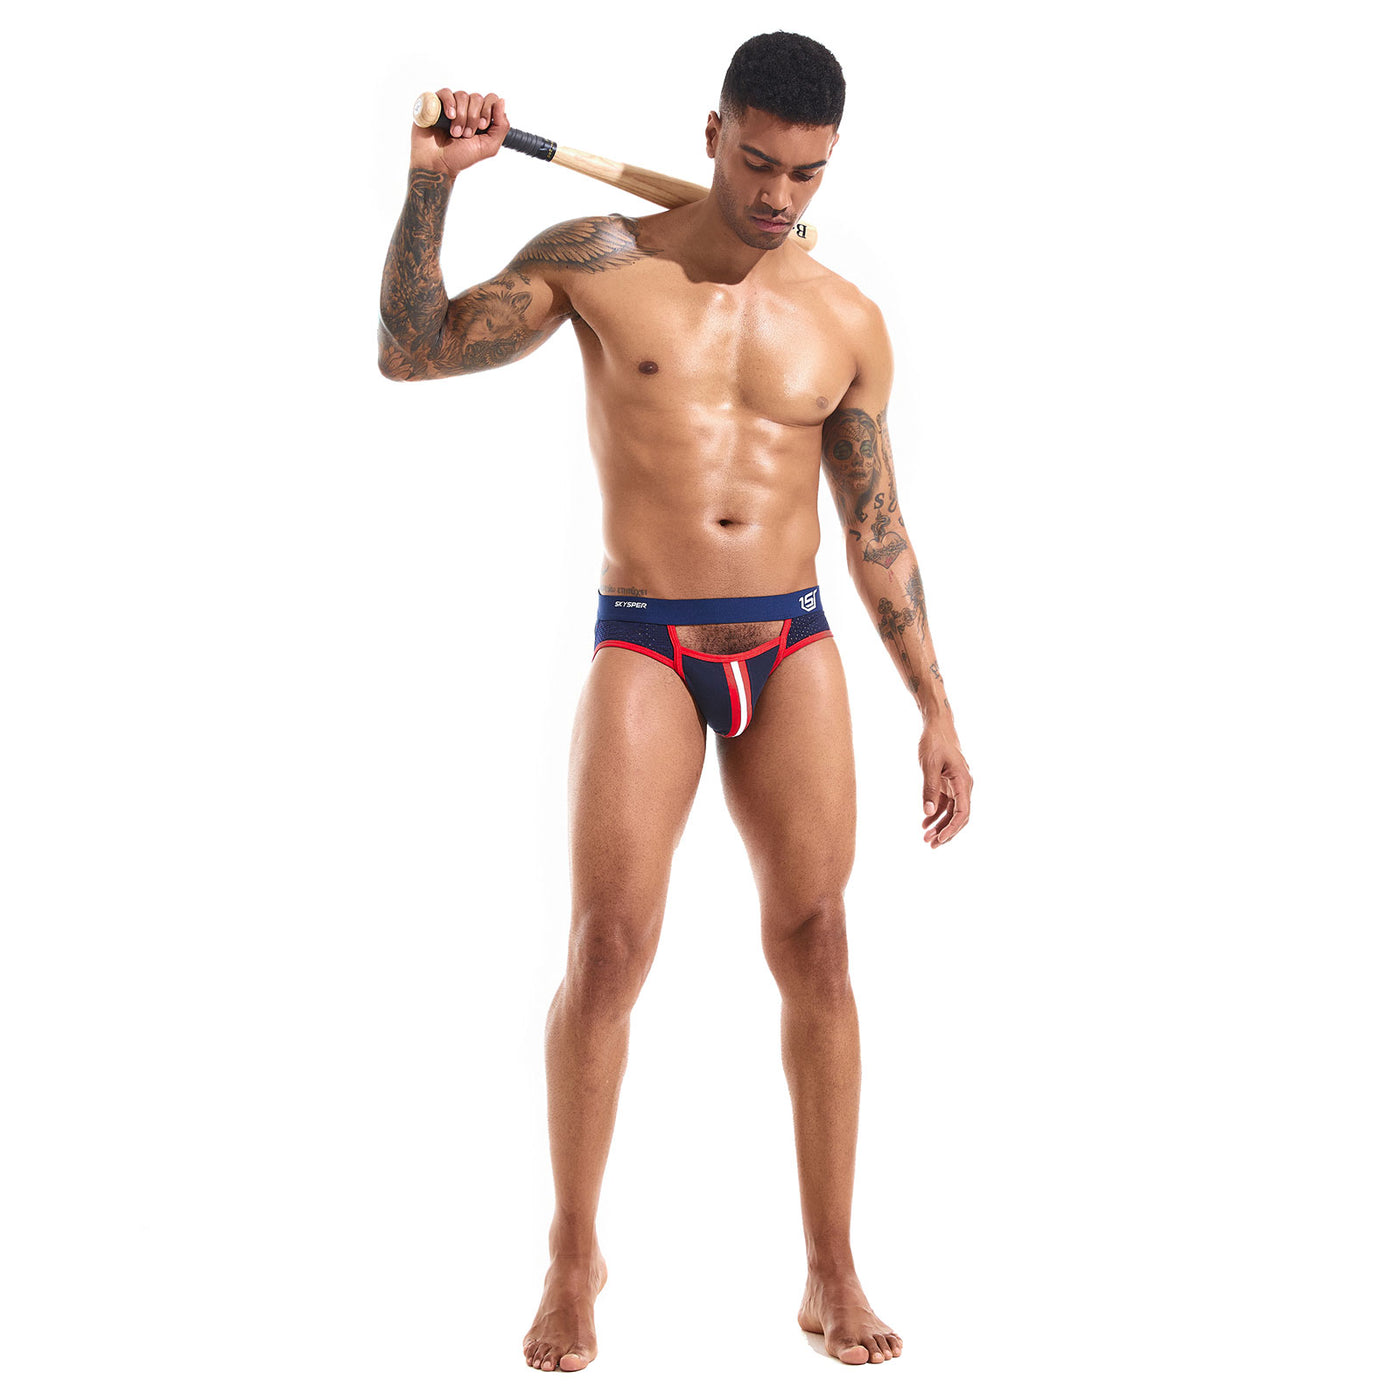 SKYSPER SG49 - Men's Jockstrap Underwear Athletic Supporter